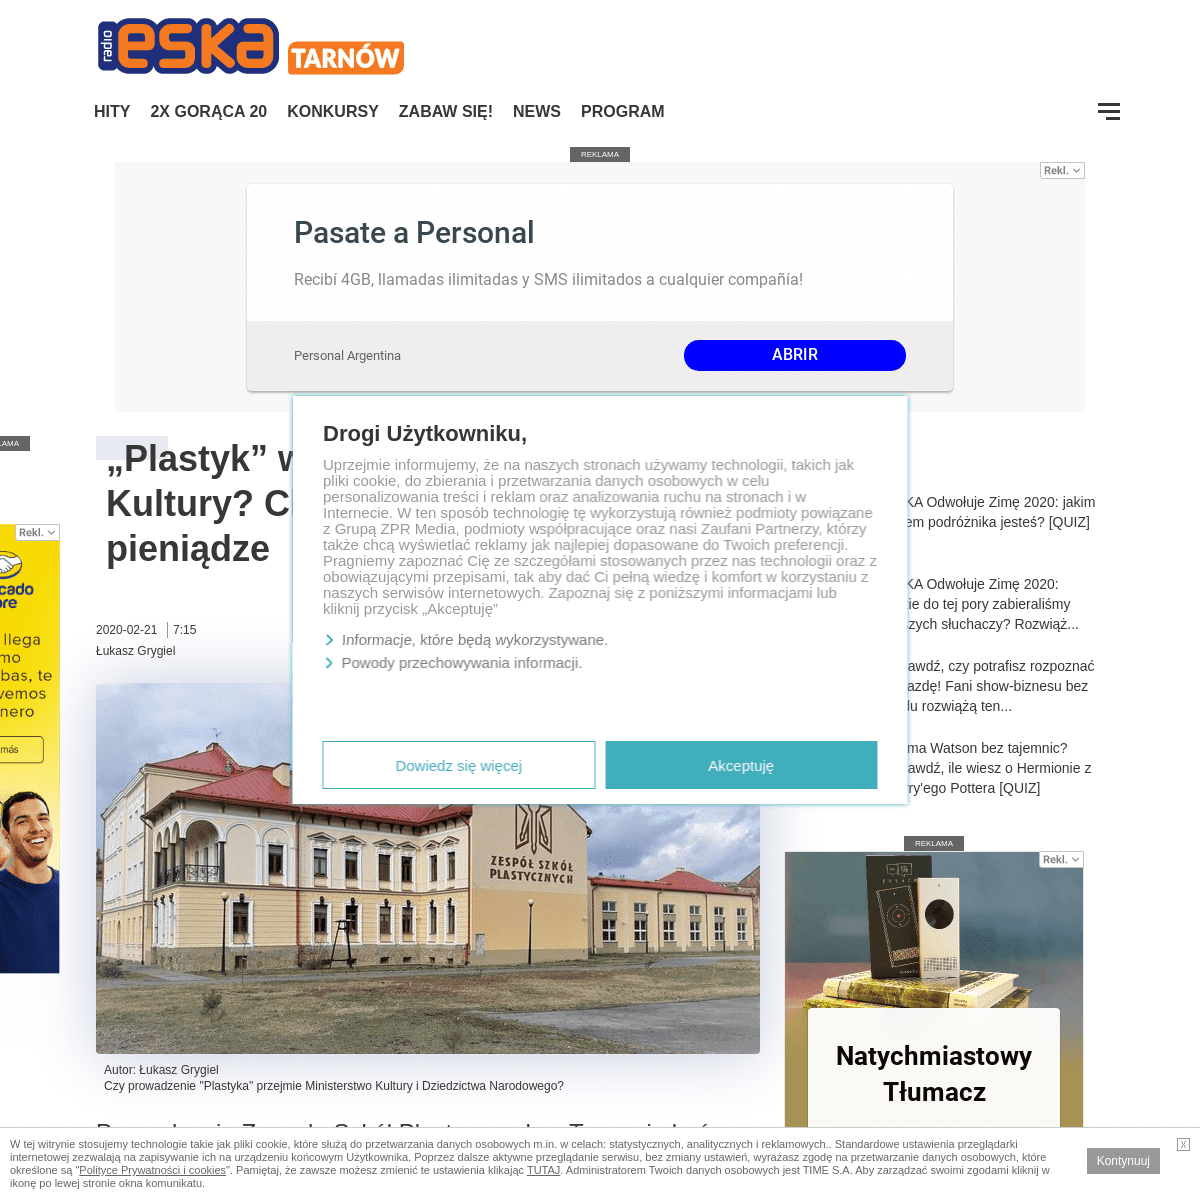 A complete backup of www.eska.pl/tarnow/plastyk-w-rekach-ministerstwa-kultury-chodzi-o-wiekszy-prestiz-i-pieniadze-aa-8xqr-Es5V-